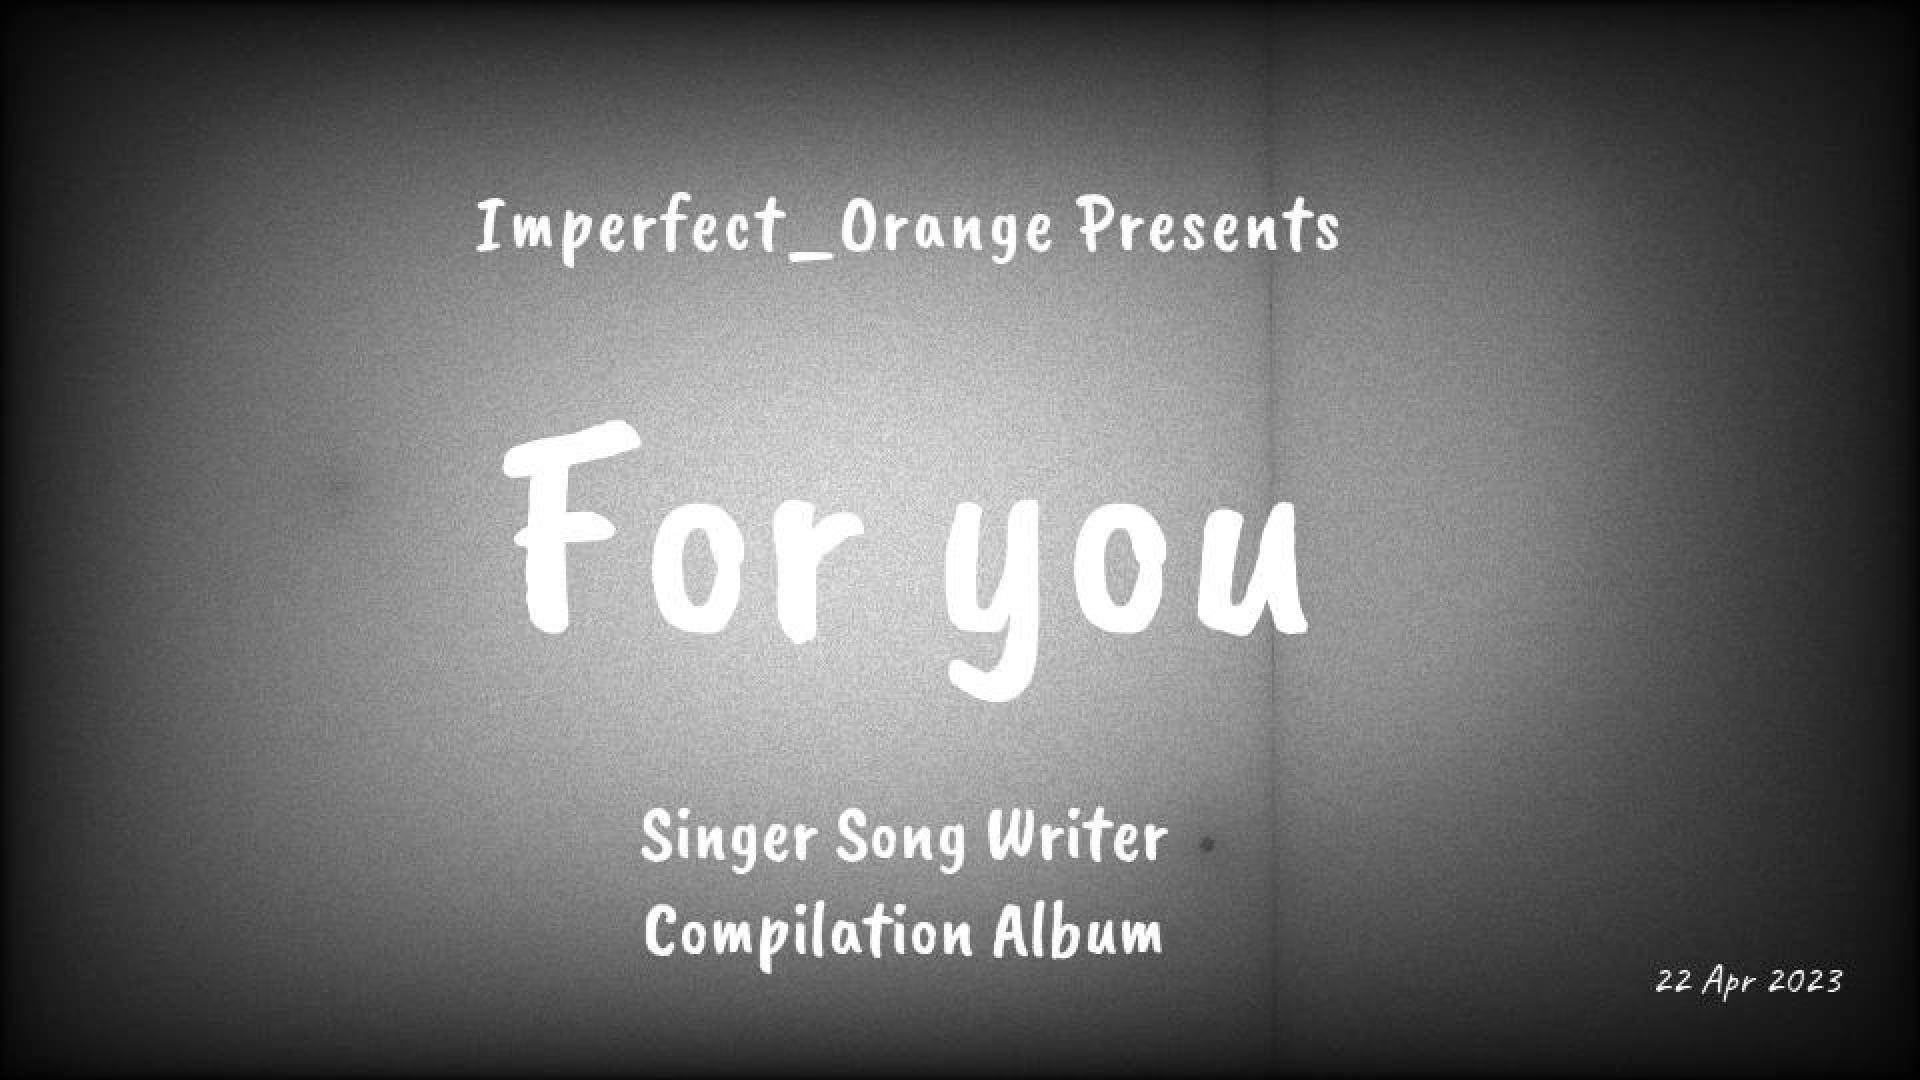 Imperfect Orange Records 